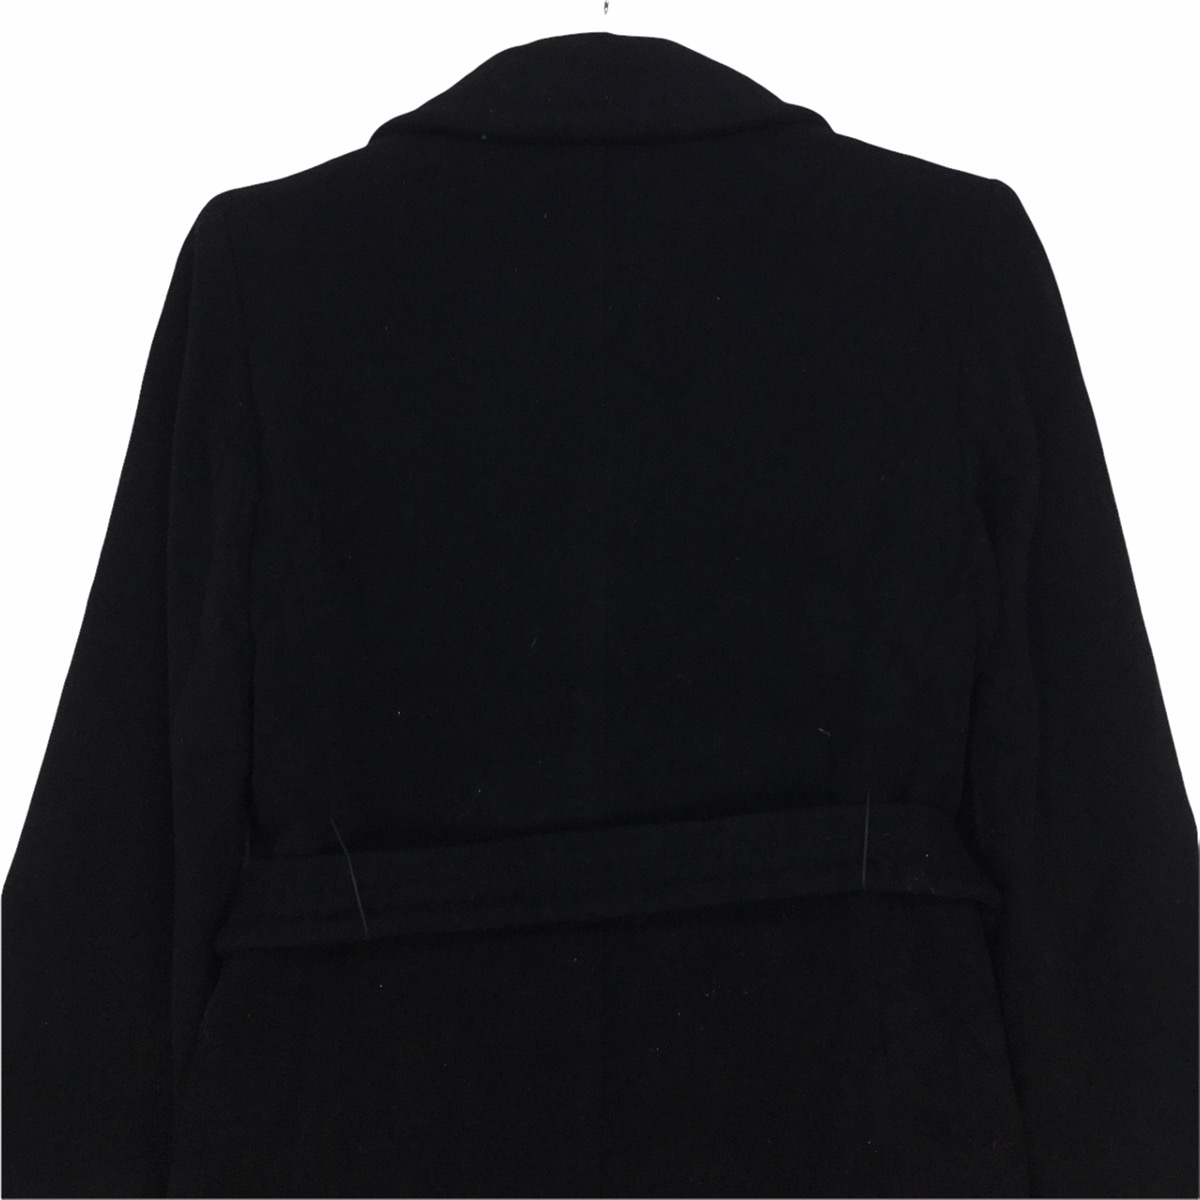 MAX MARA & Co. Double Breasted Parka Long Coat Jacket - 7